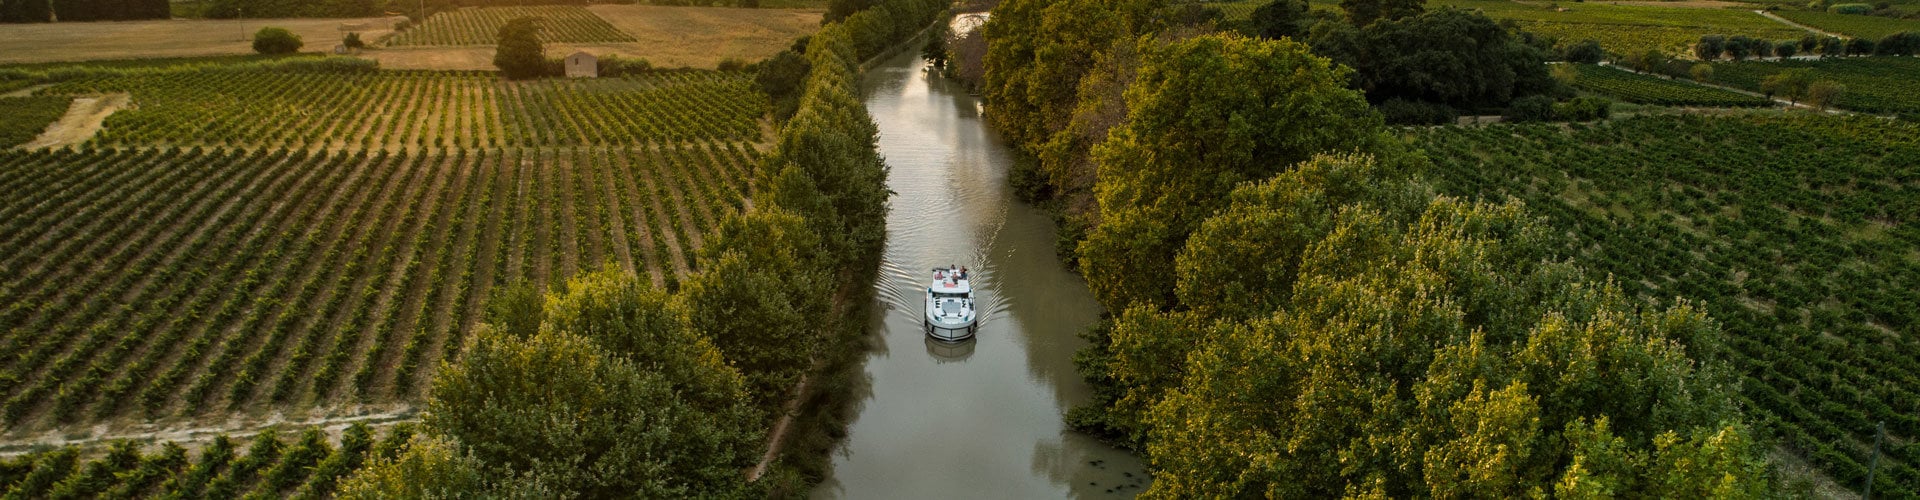 Canal du Midi ©Holger Leue